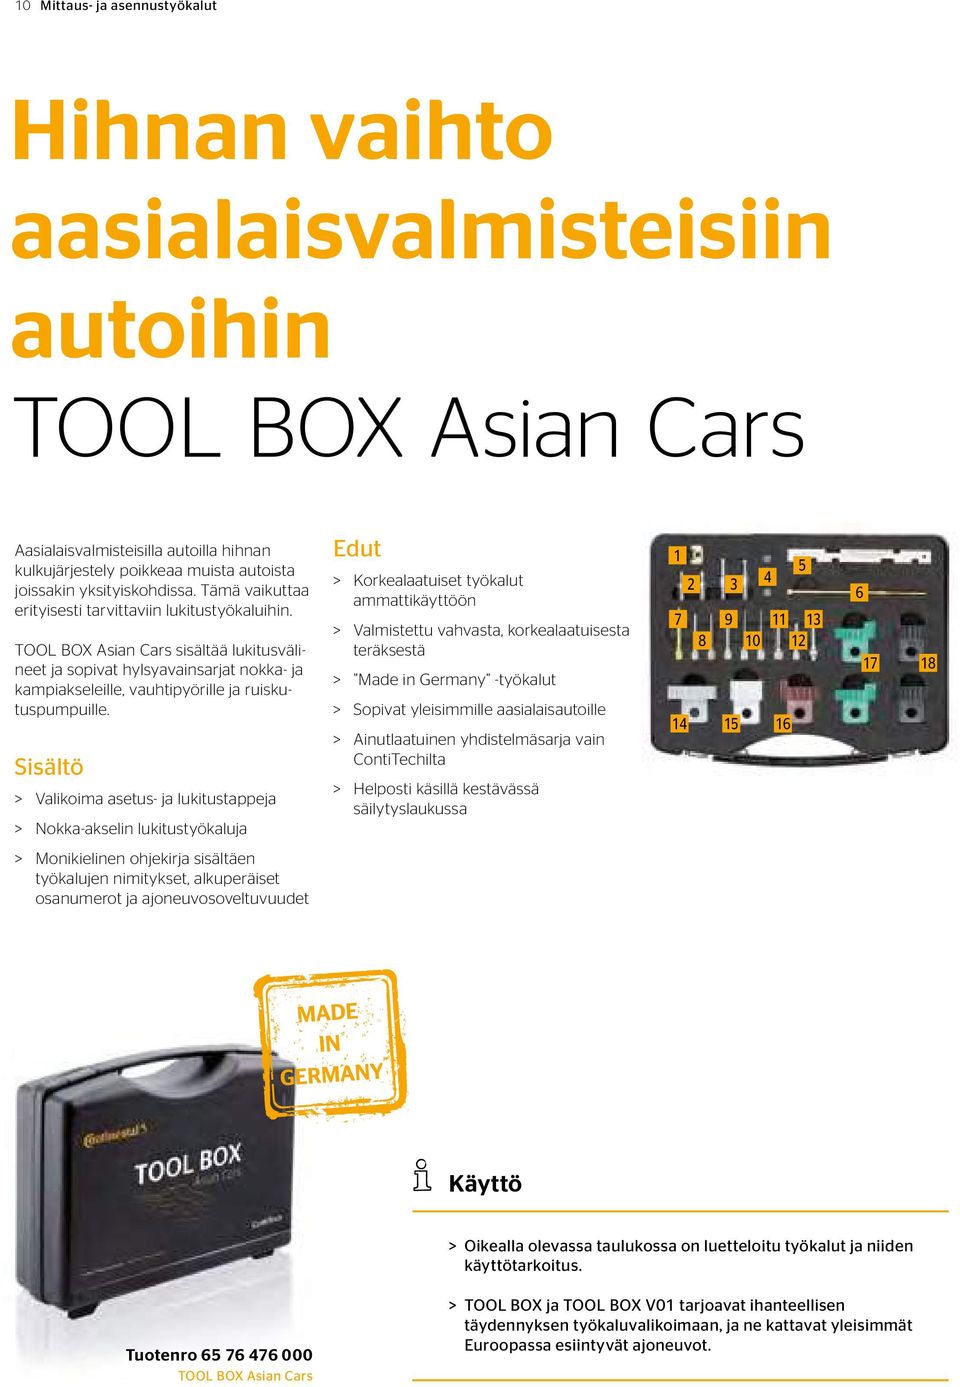 TOOL BOX Asian Cars sisältää lukitusvälineet ja sopivat hylsyavainsarjat nokka- ja kampiakseleille, vauhtipyörille ja ruiskutuspumpuille.